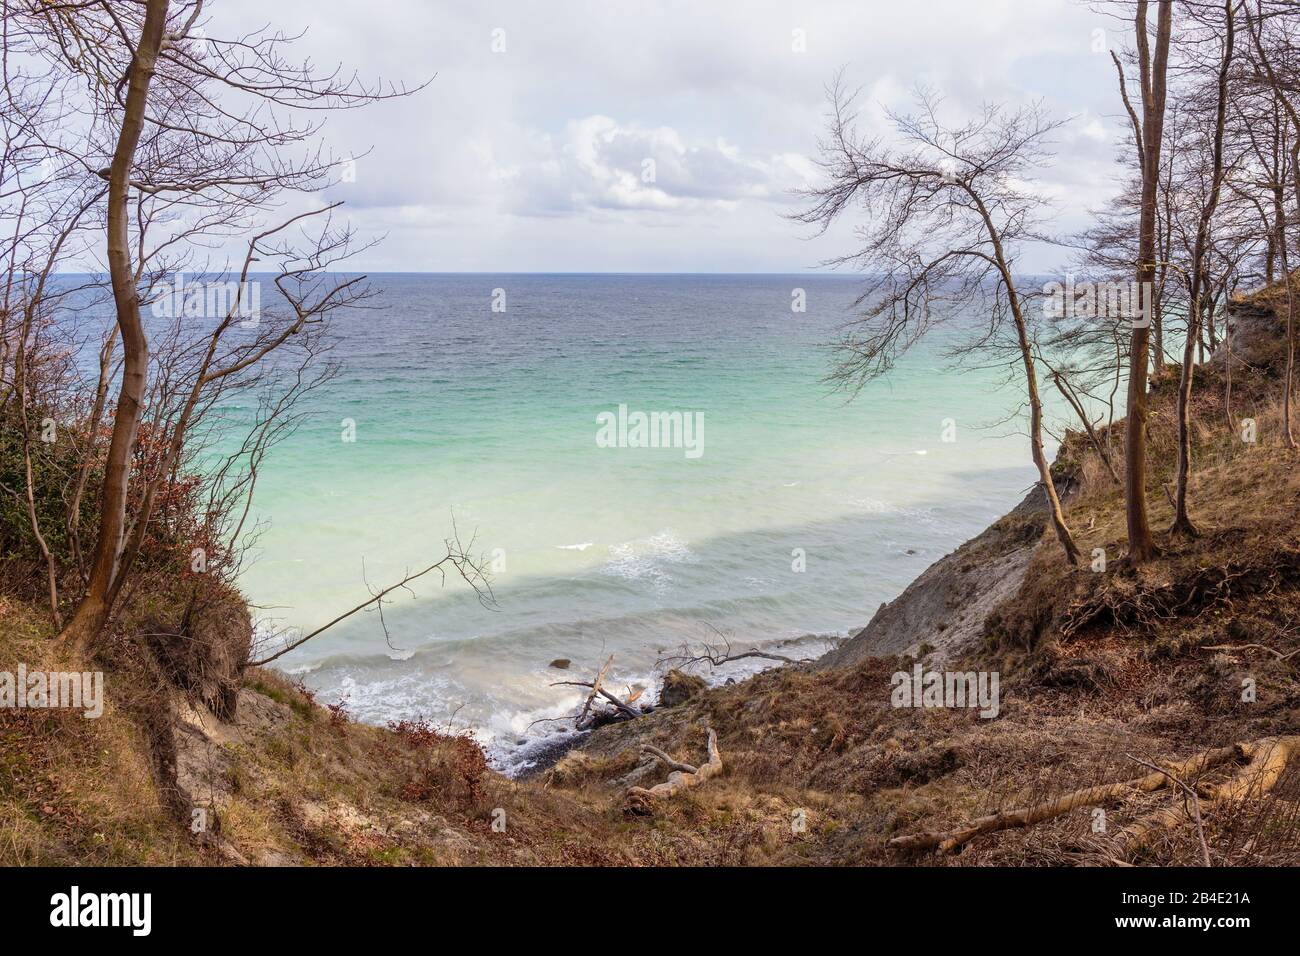 Europa, Dänemark, Møn, Blick auf die wilde Uferzone der Kreidefelsen von Møns Klint, Stock Photo